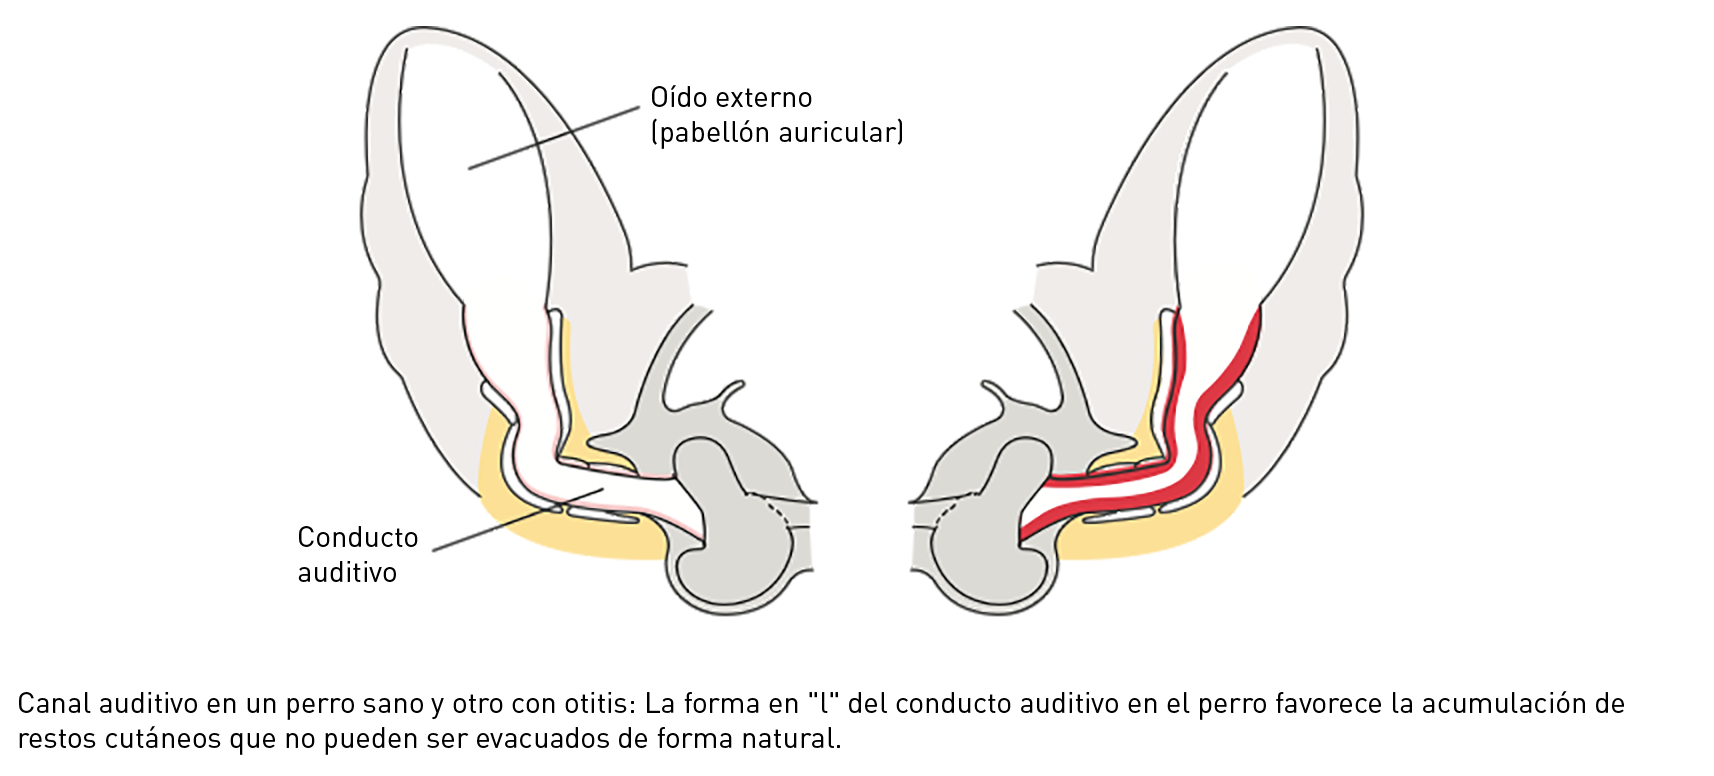 canine ear anatomy